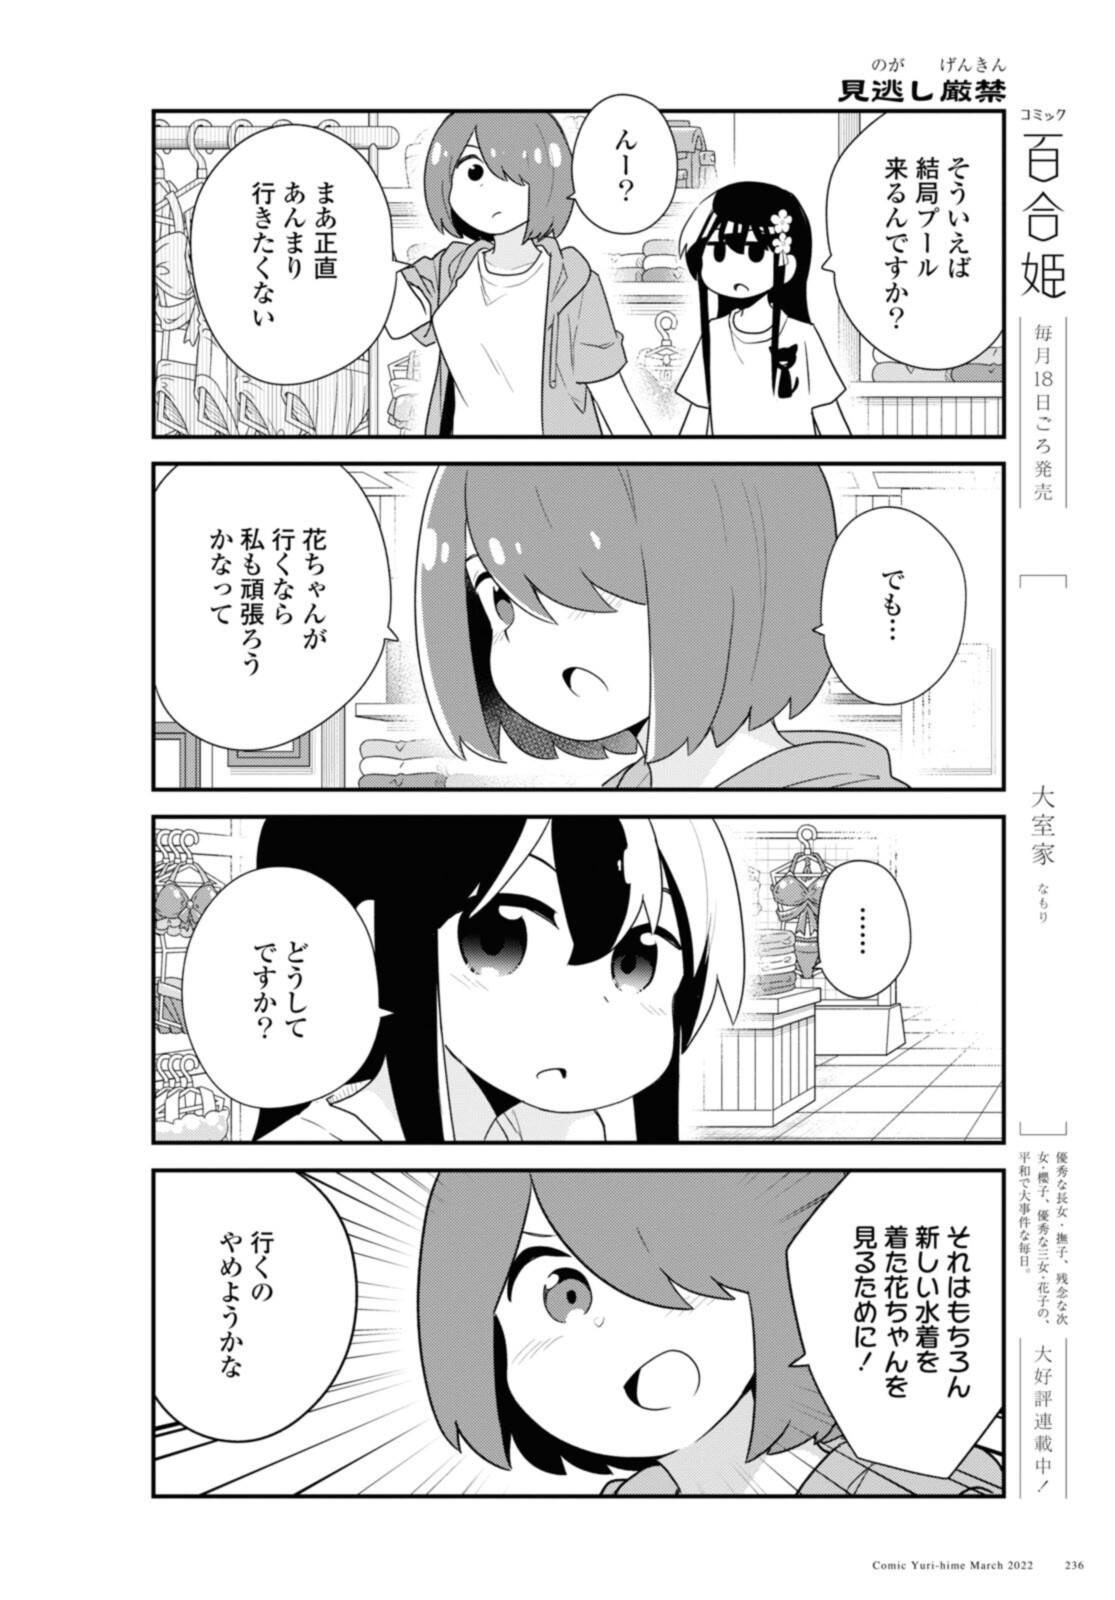 Watashi ni Tenshi ga Maiorita! - Chapter 93 - Page 12